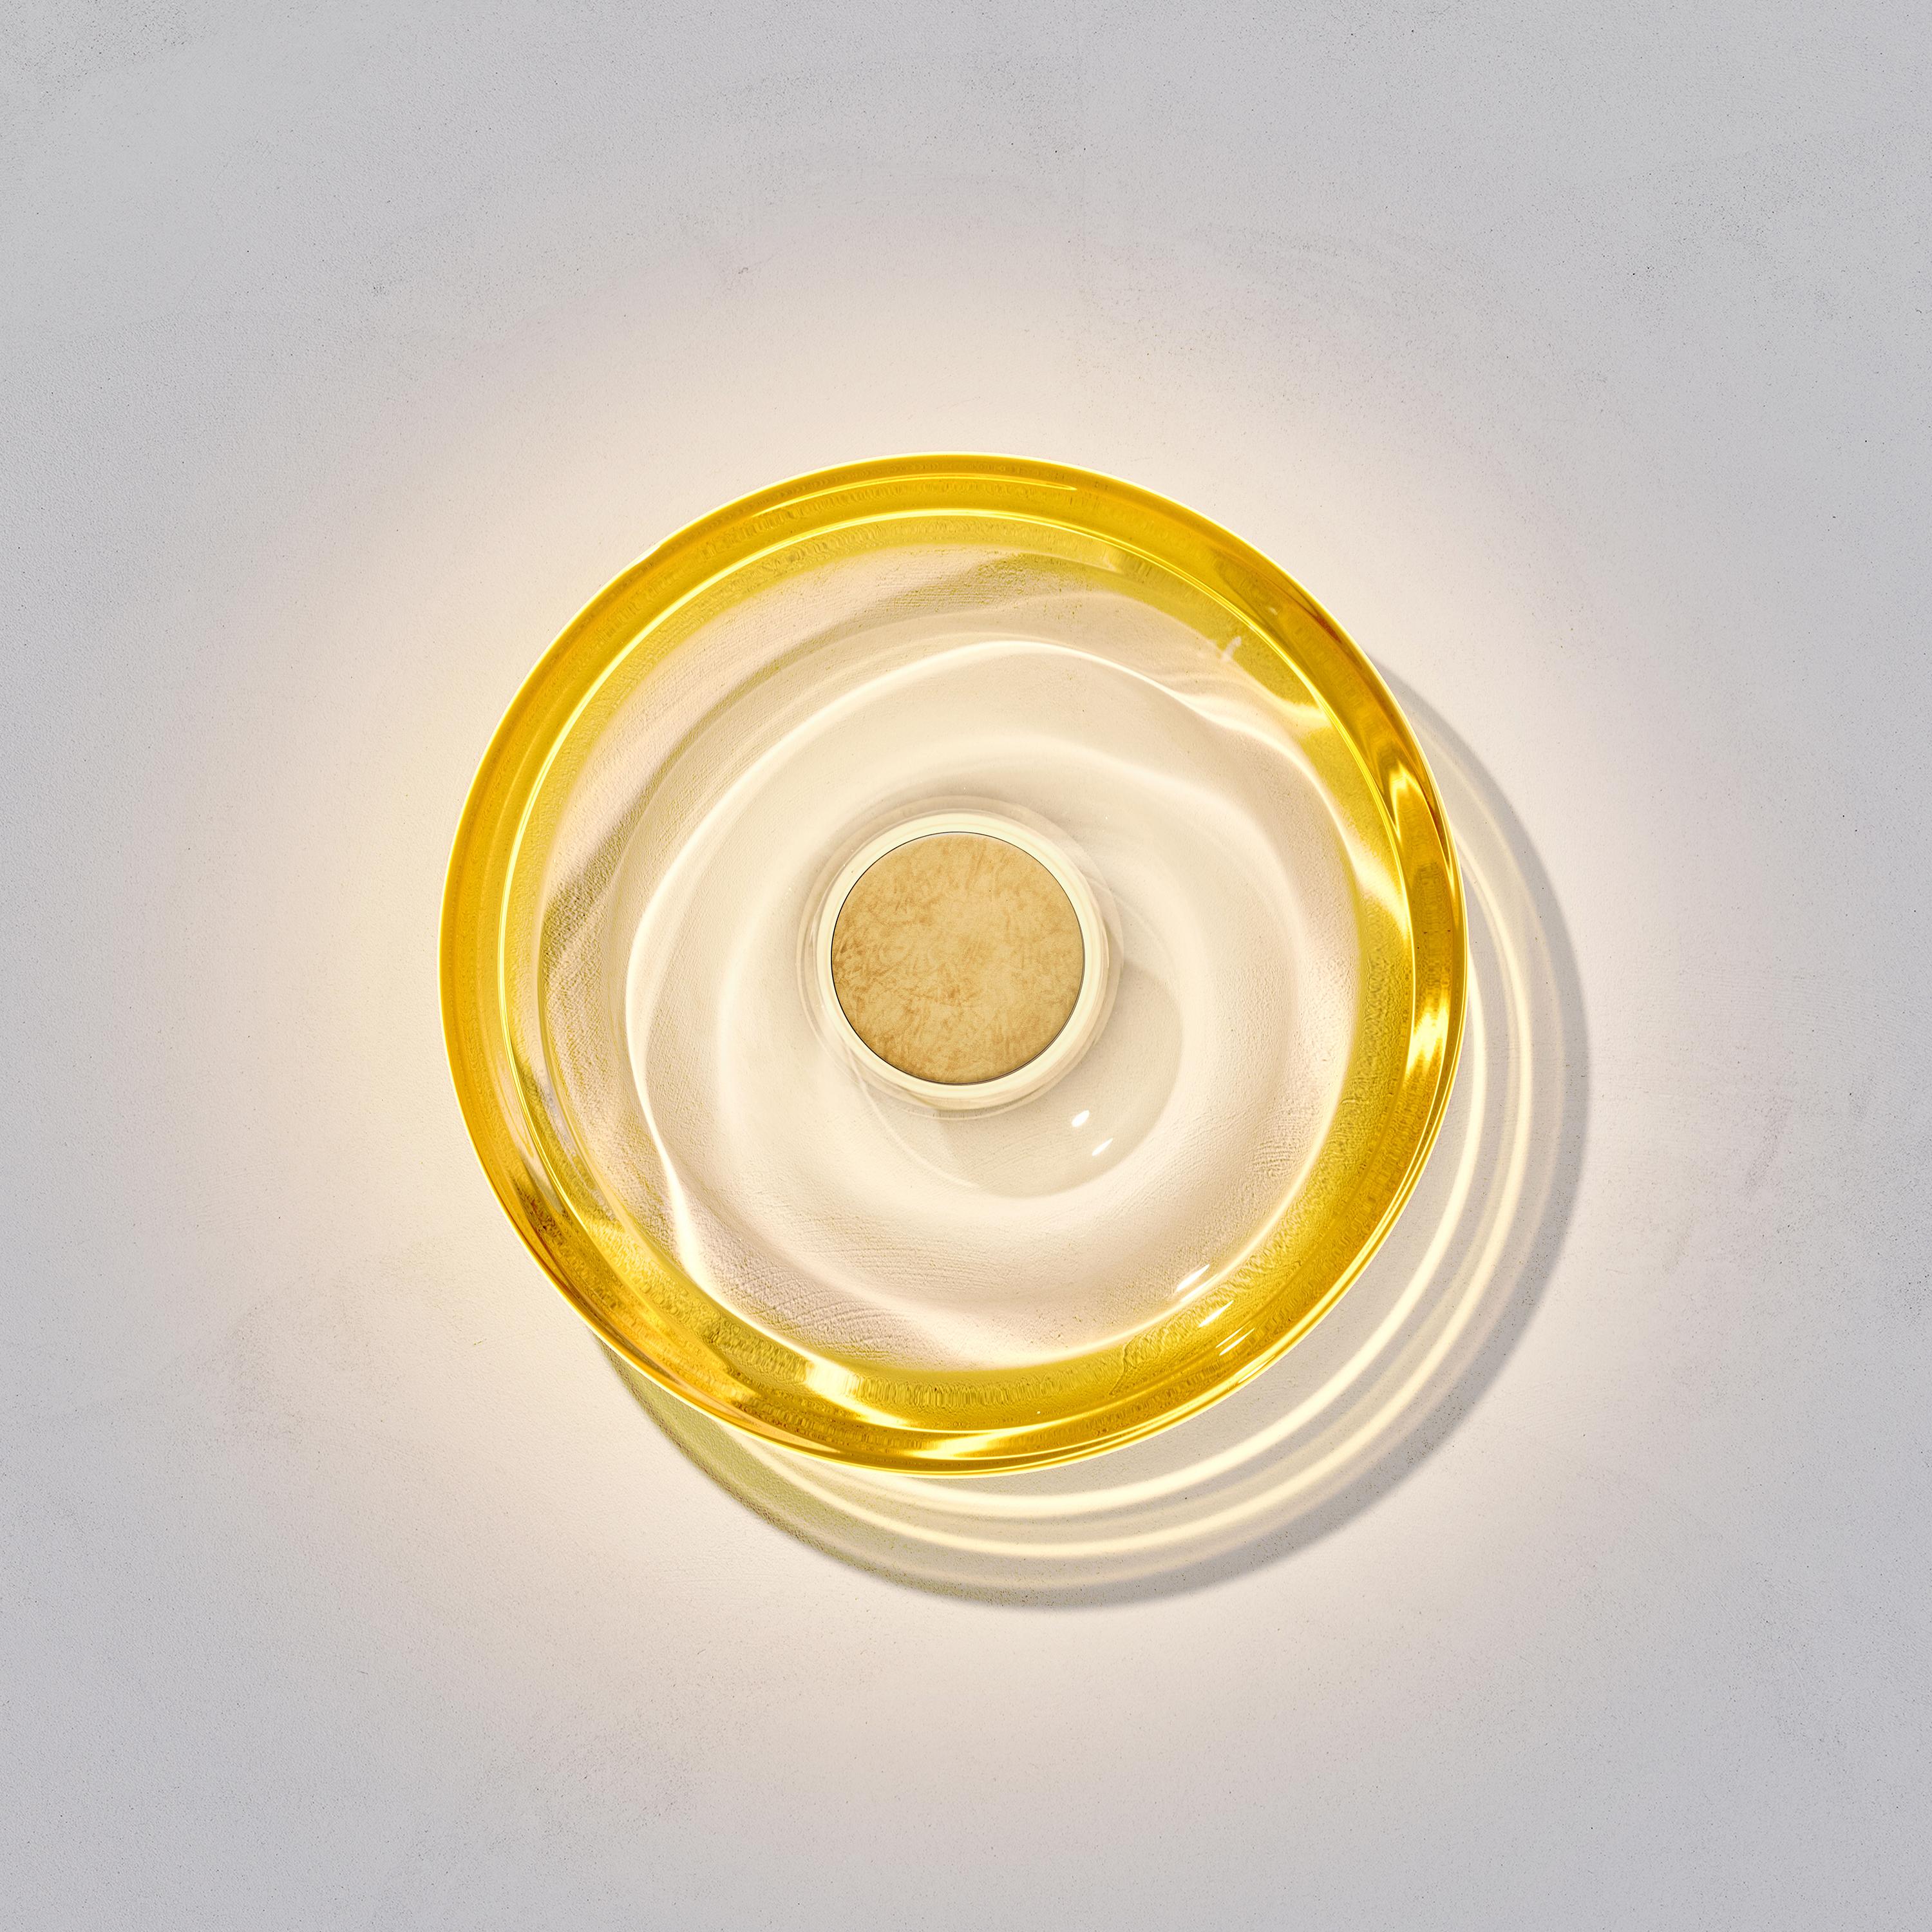 Wandleuchte Liquid Amber wurde von der internationalen Beleuchtungskünstlerin Eva Menz entworfen. Inspiriert von den kreisförmigen Riffelungen und Reflexionen, die auf Wasser entstehen, verwandelt sich das gelbe Farbverlaufglas in eine schöne